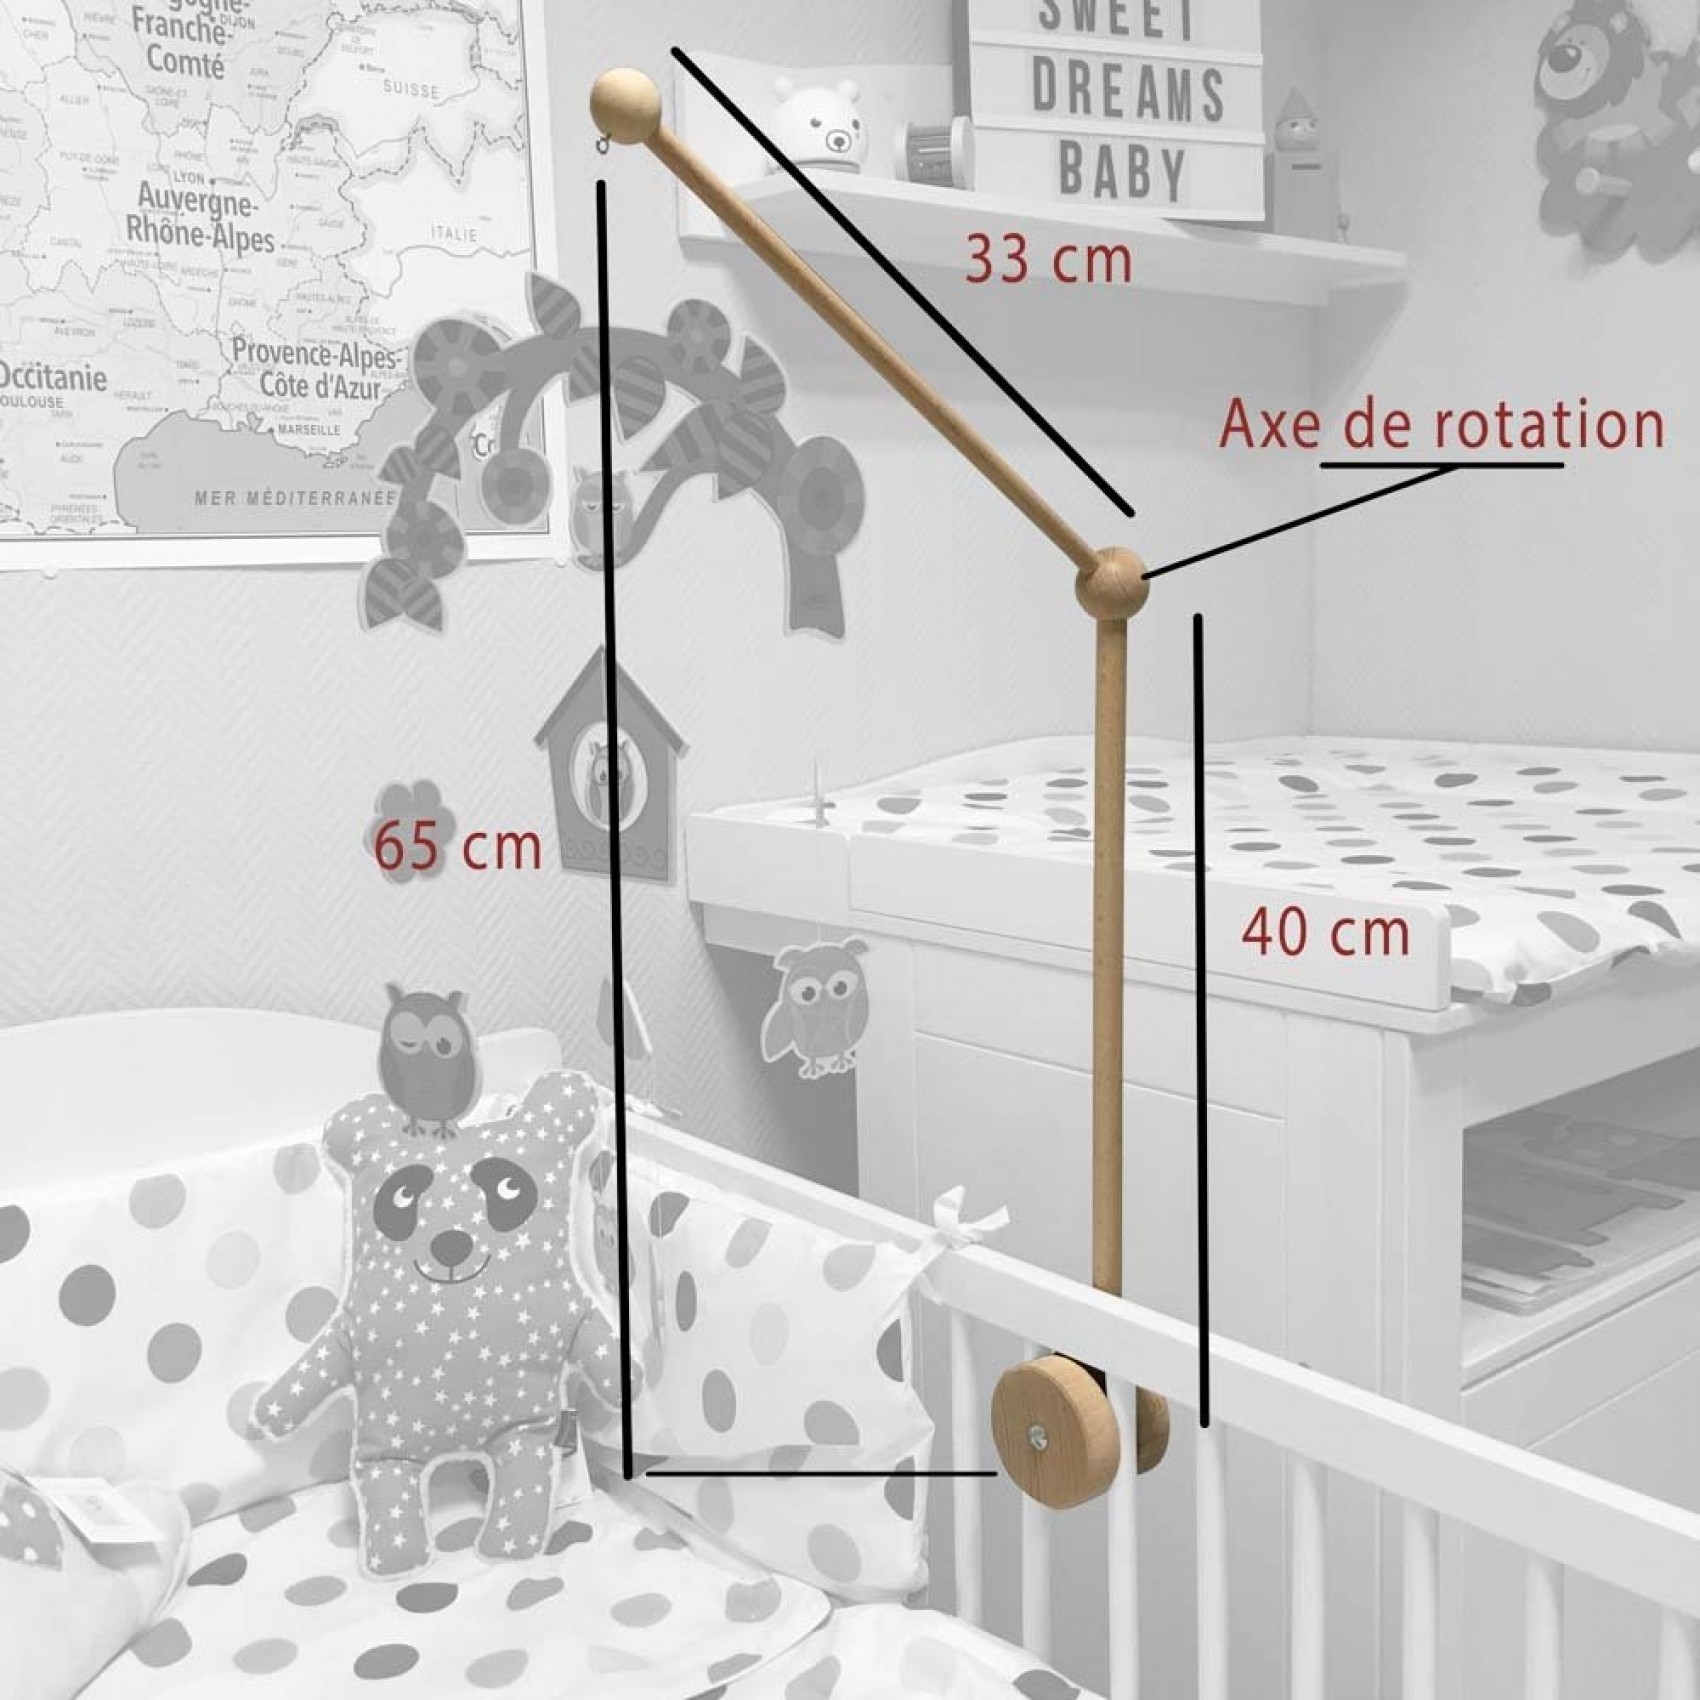 Le support en bois pour suspendre le mobile de bébé à son lit